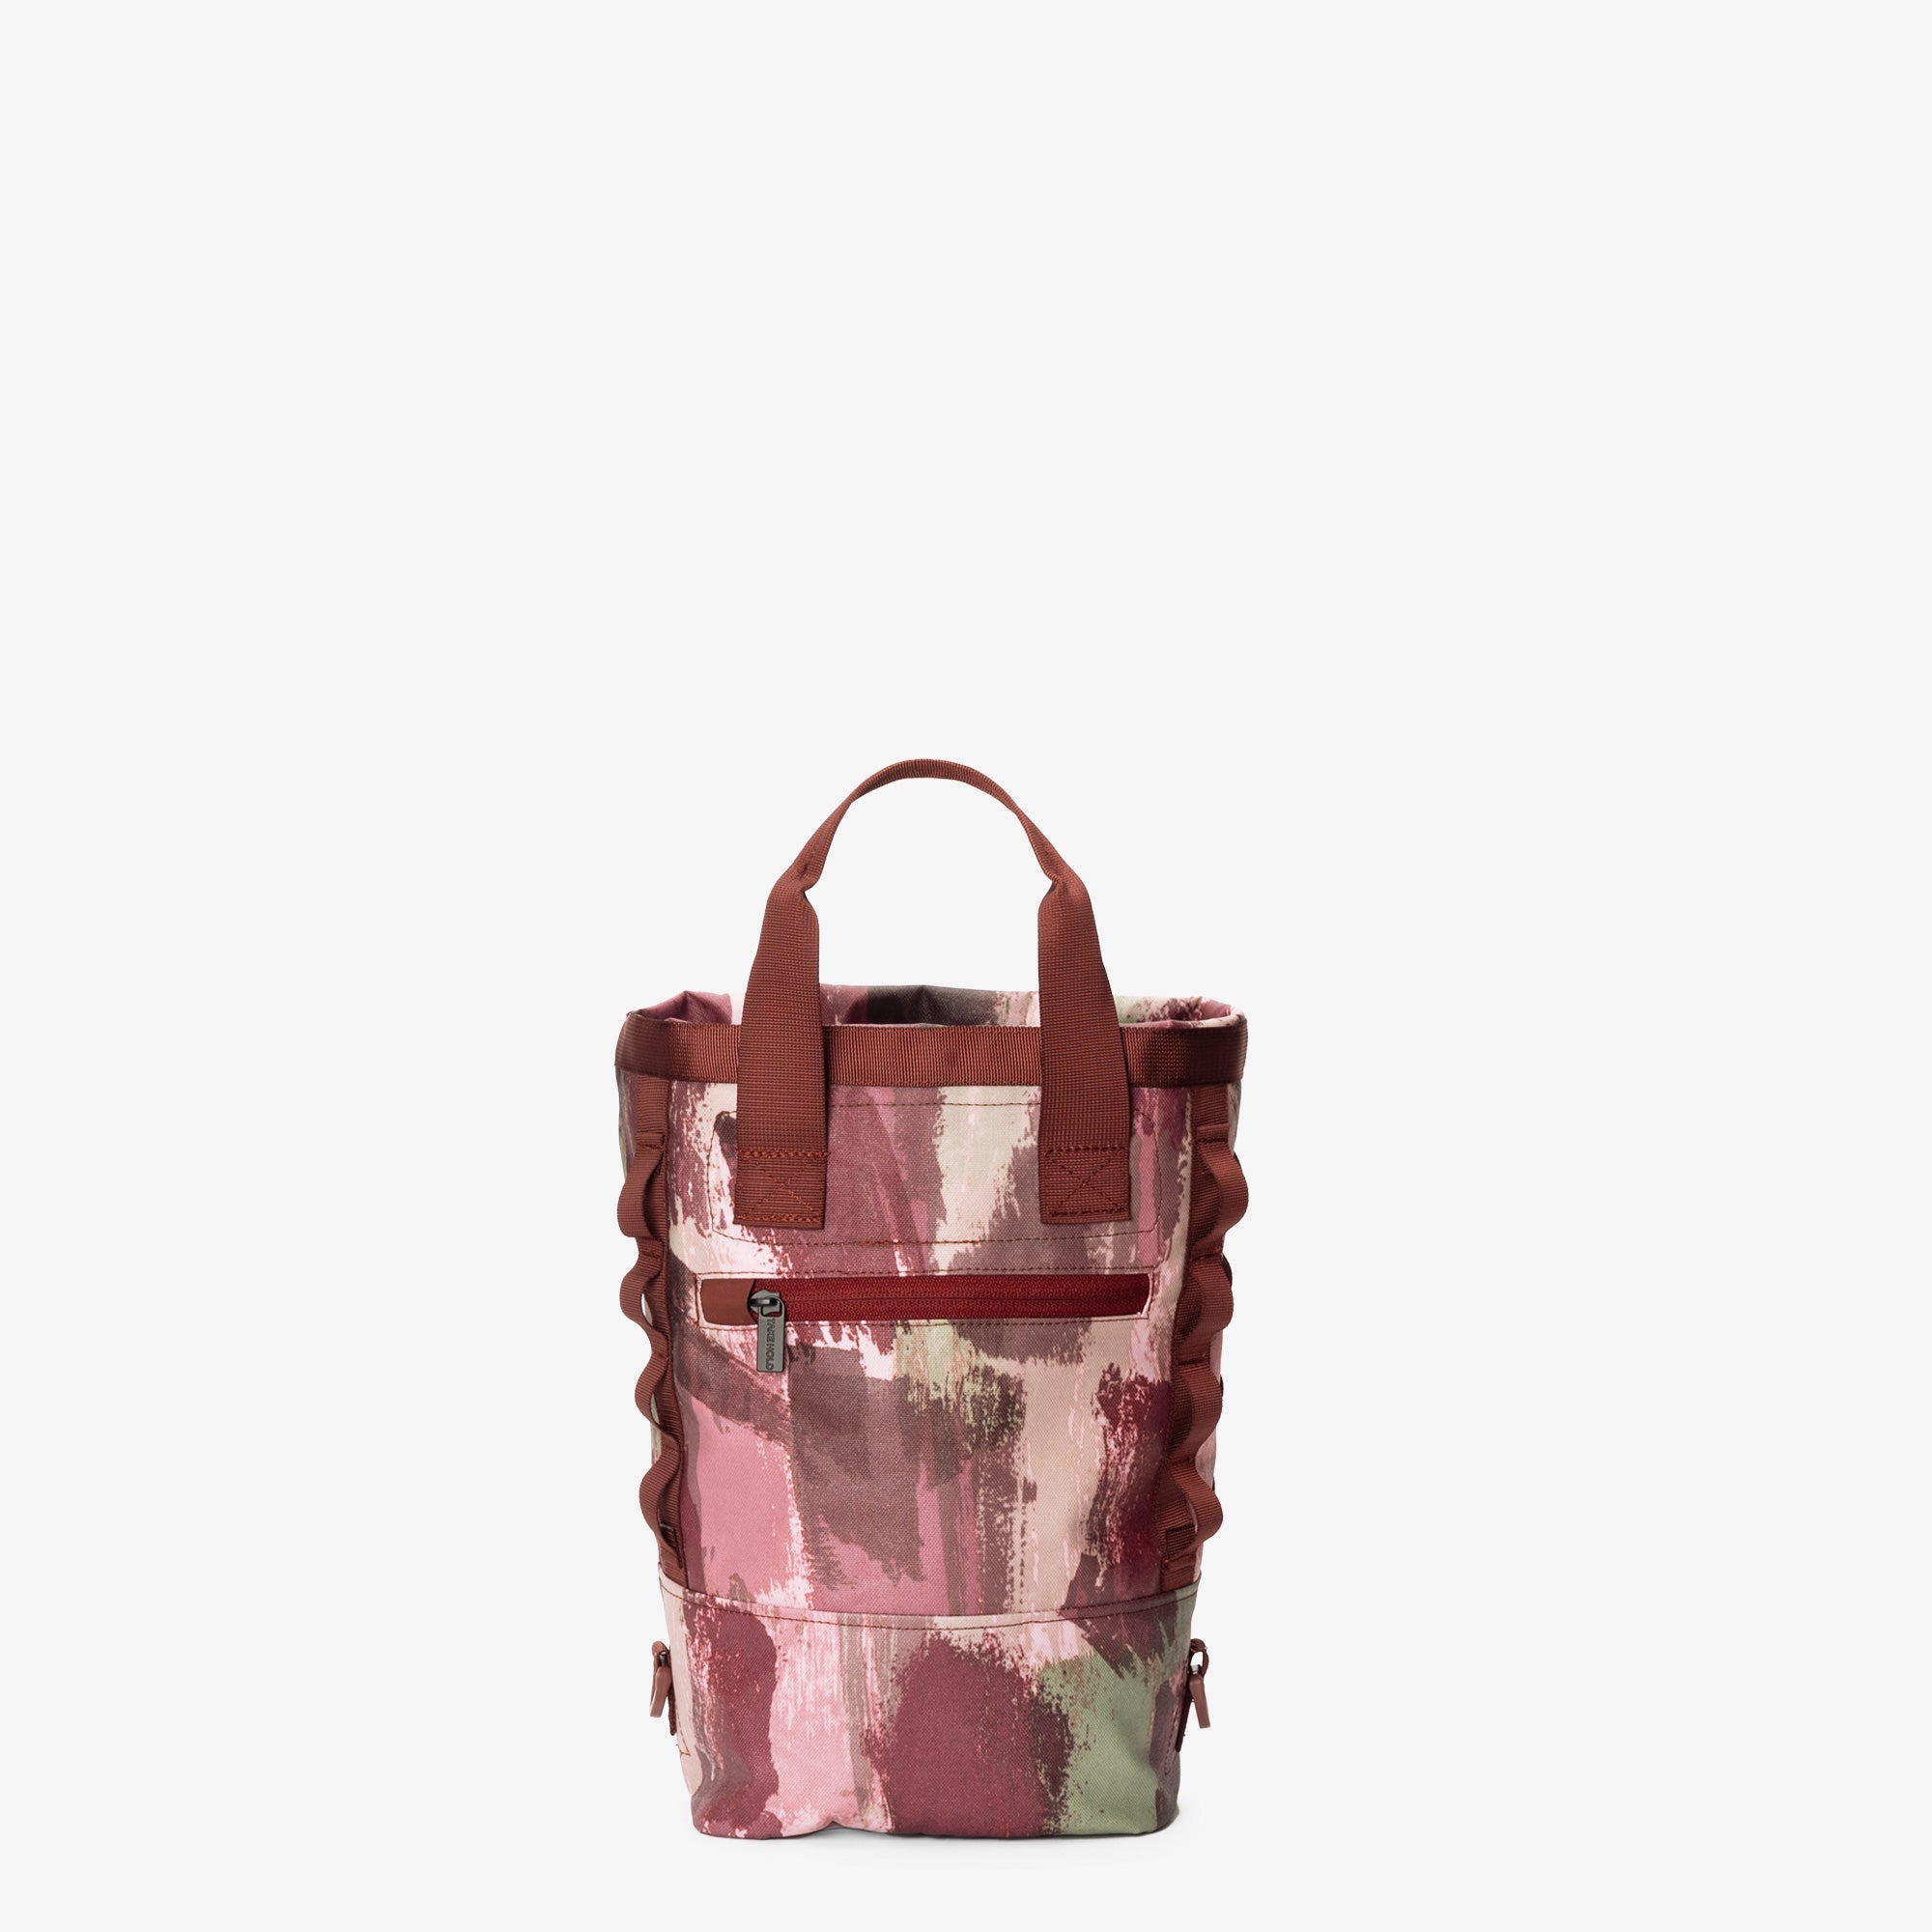 Lv Bag Pink Inside Shop, SAVE 58%.